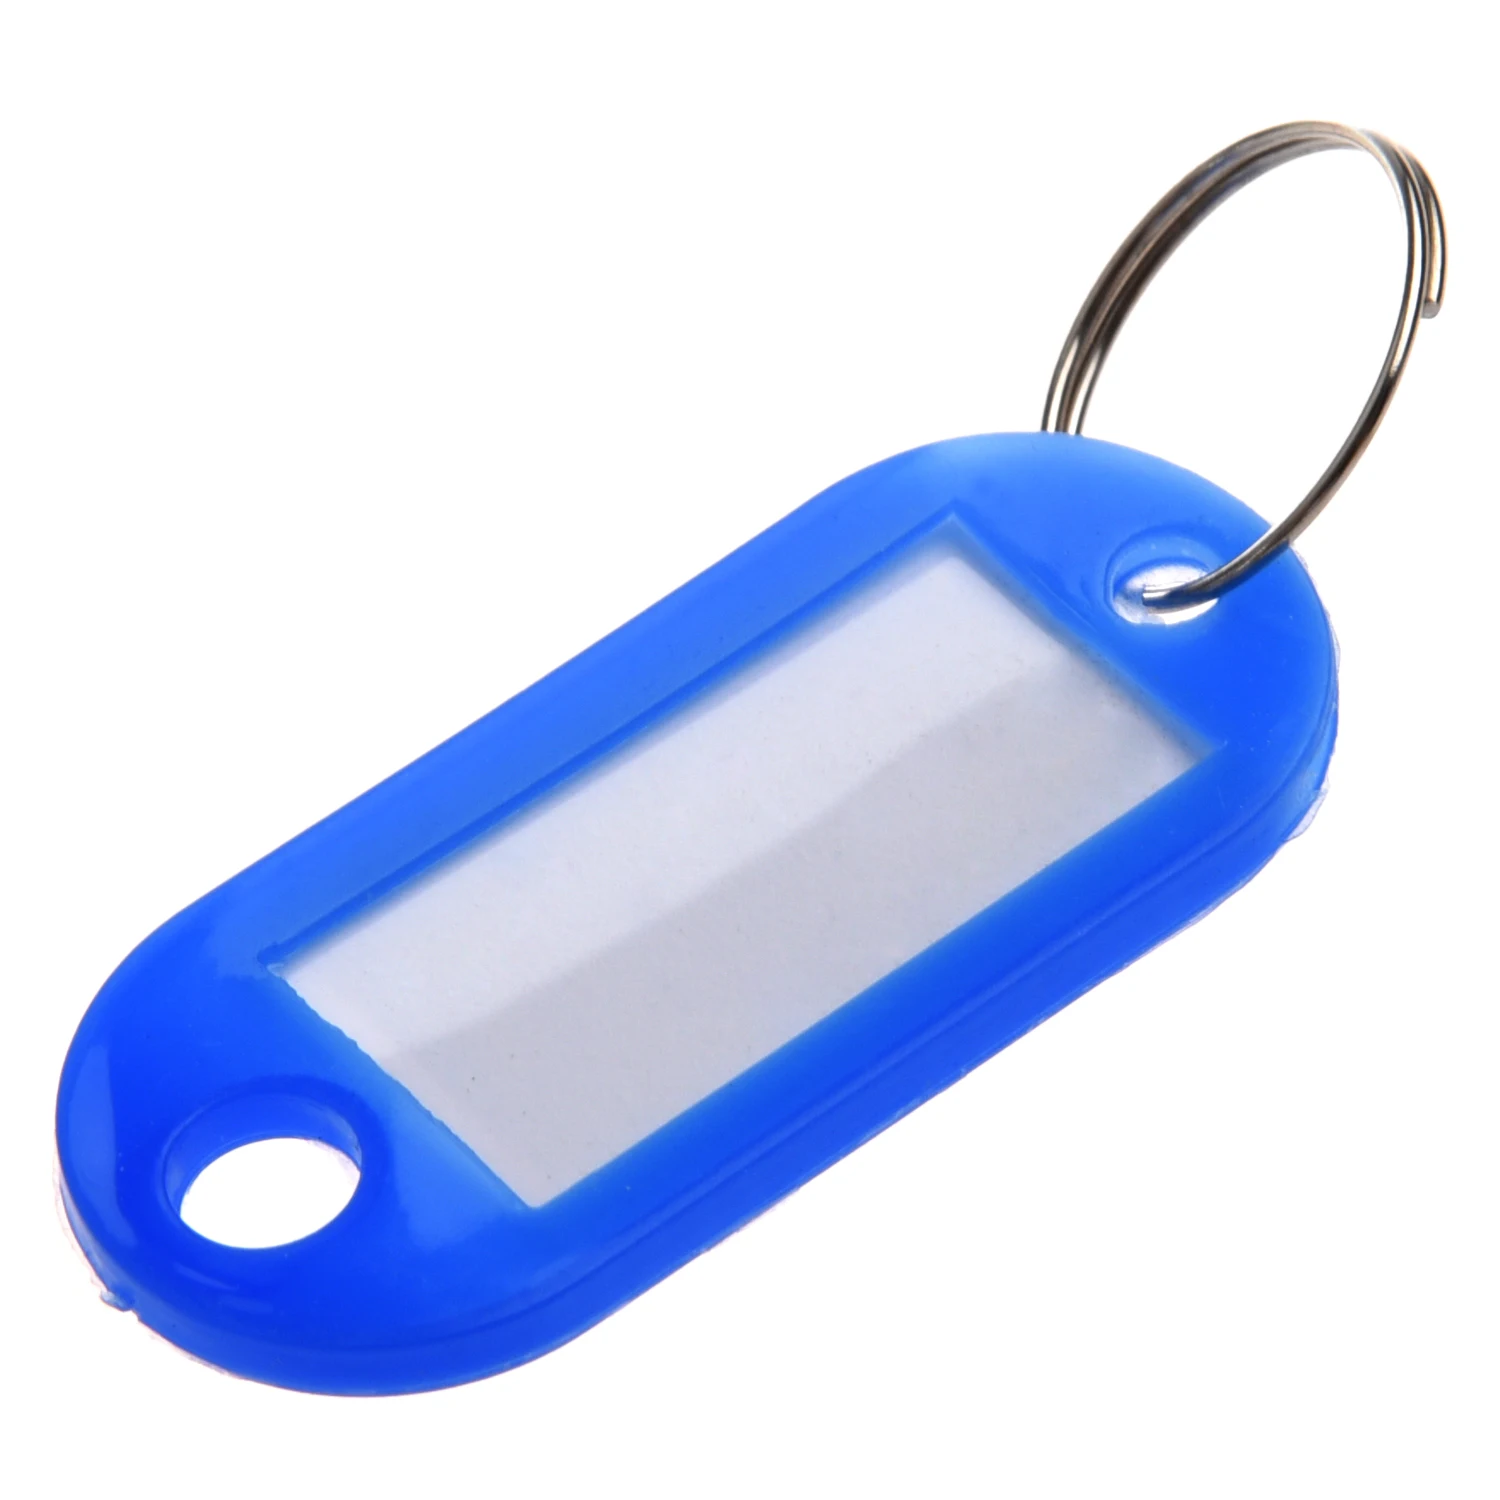 30 X цветные пластиковые брелки для ключей багажные ID Метки этикетки Брелки с именными картами для многих видов использования